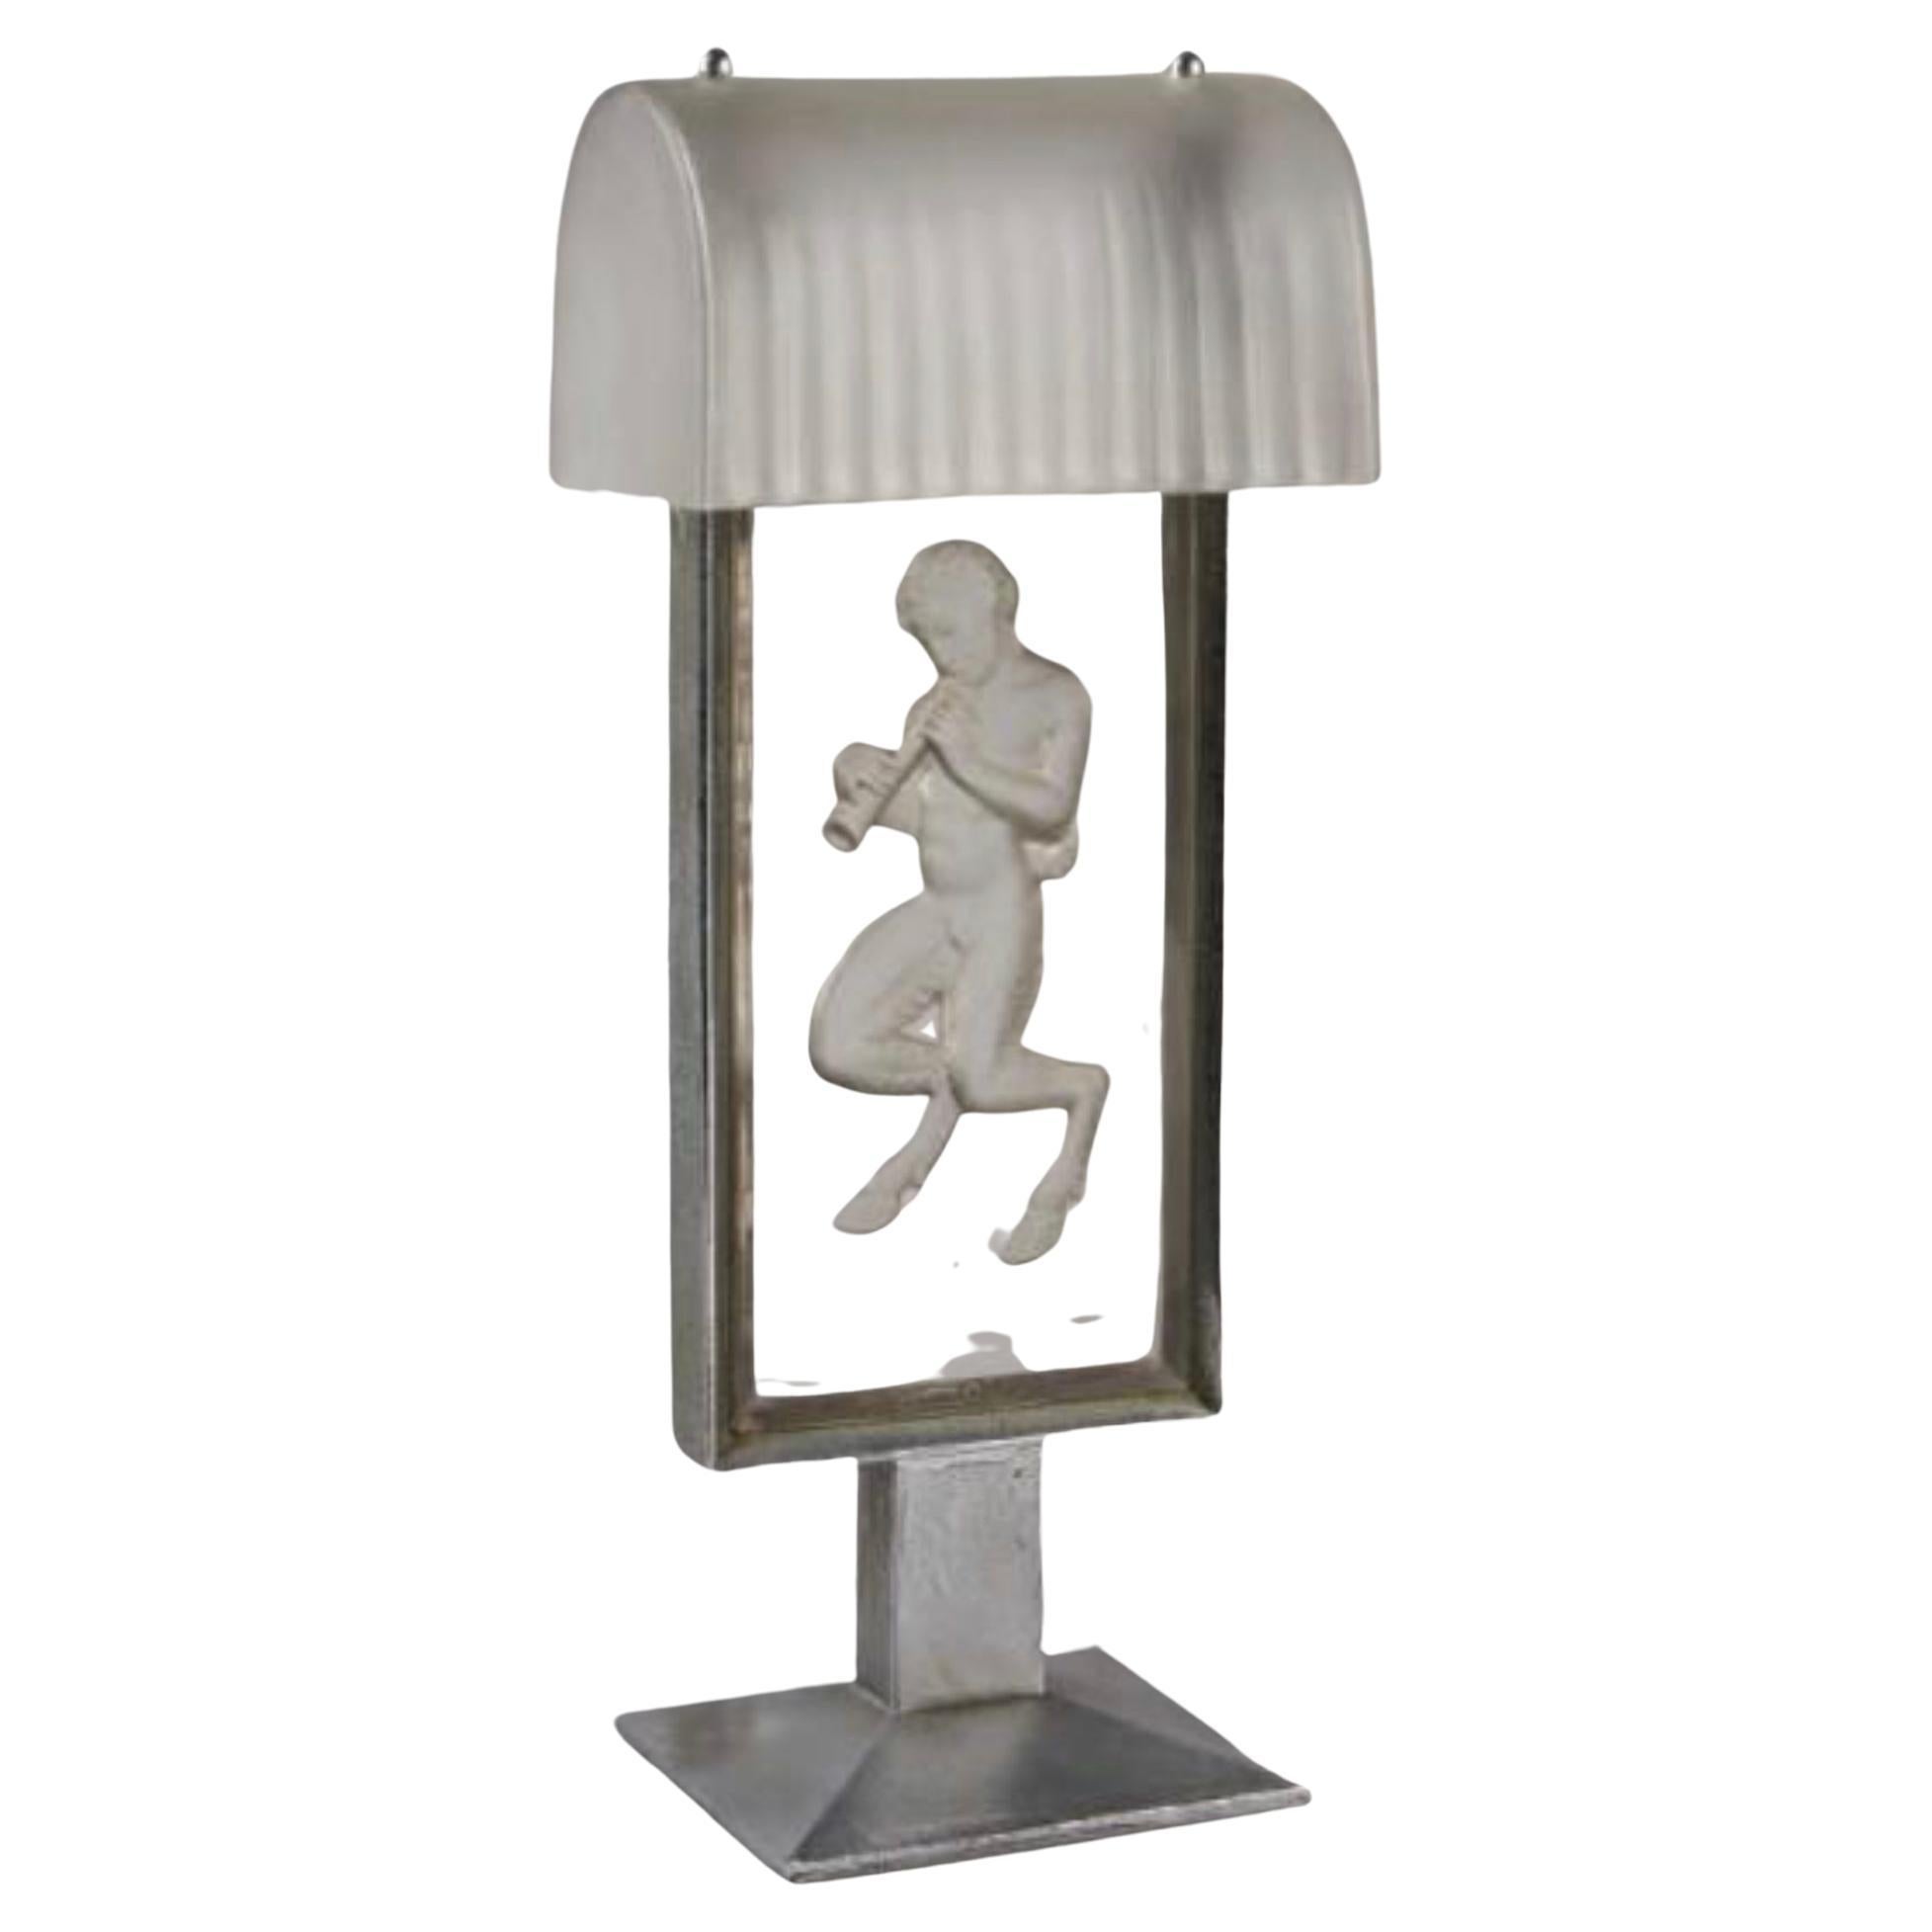 R Lalique "Pan" Lamp For Sale